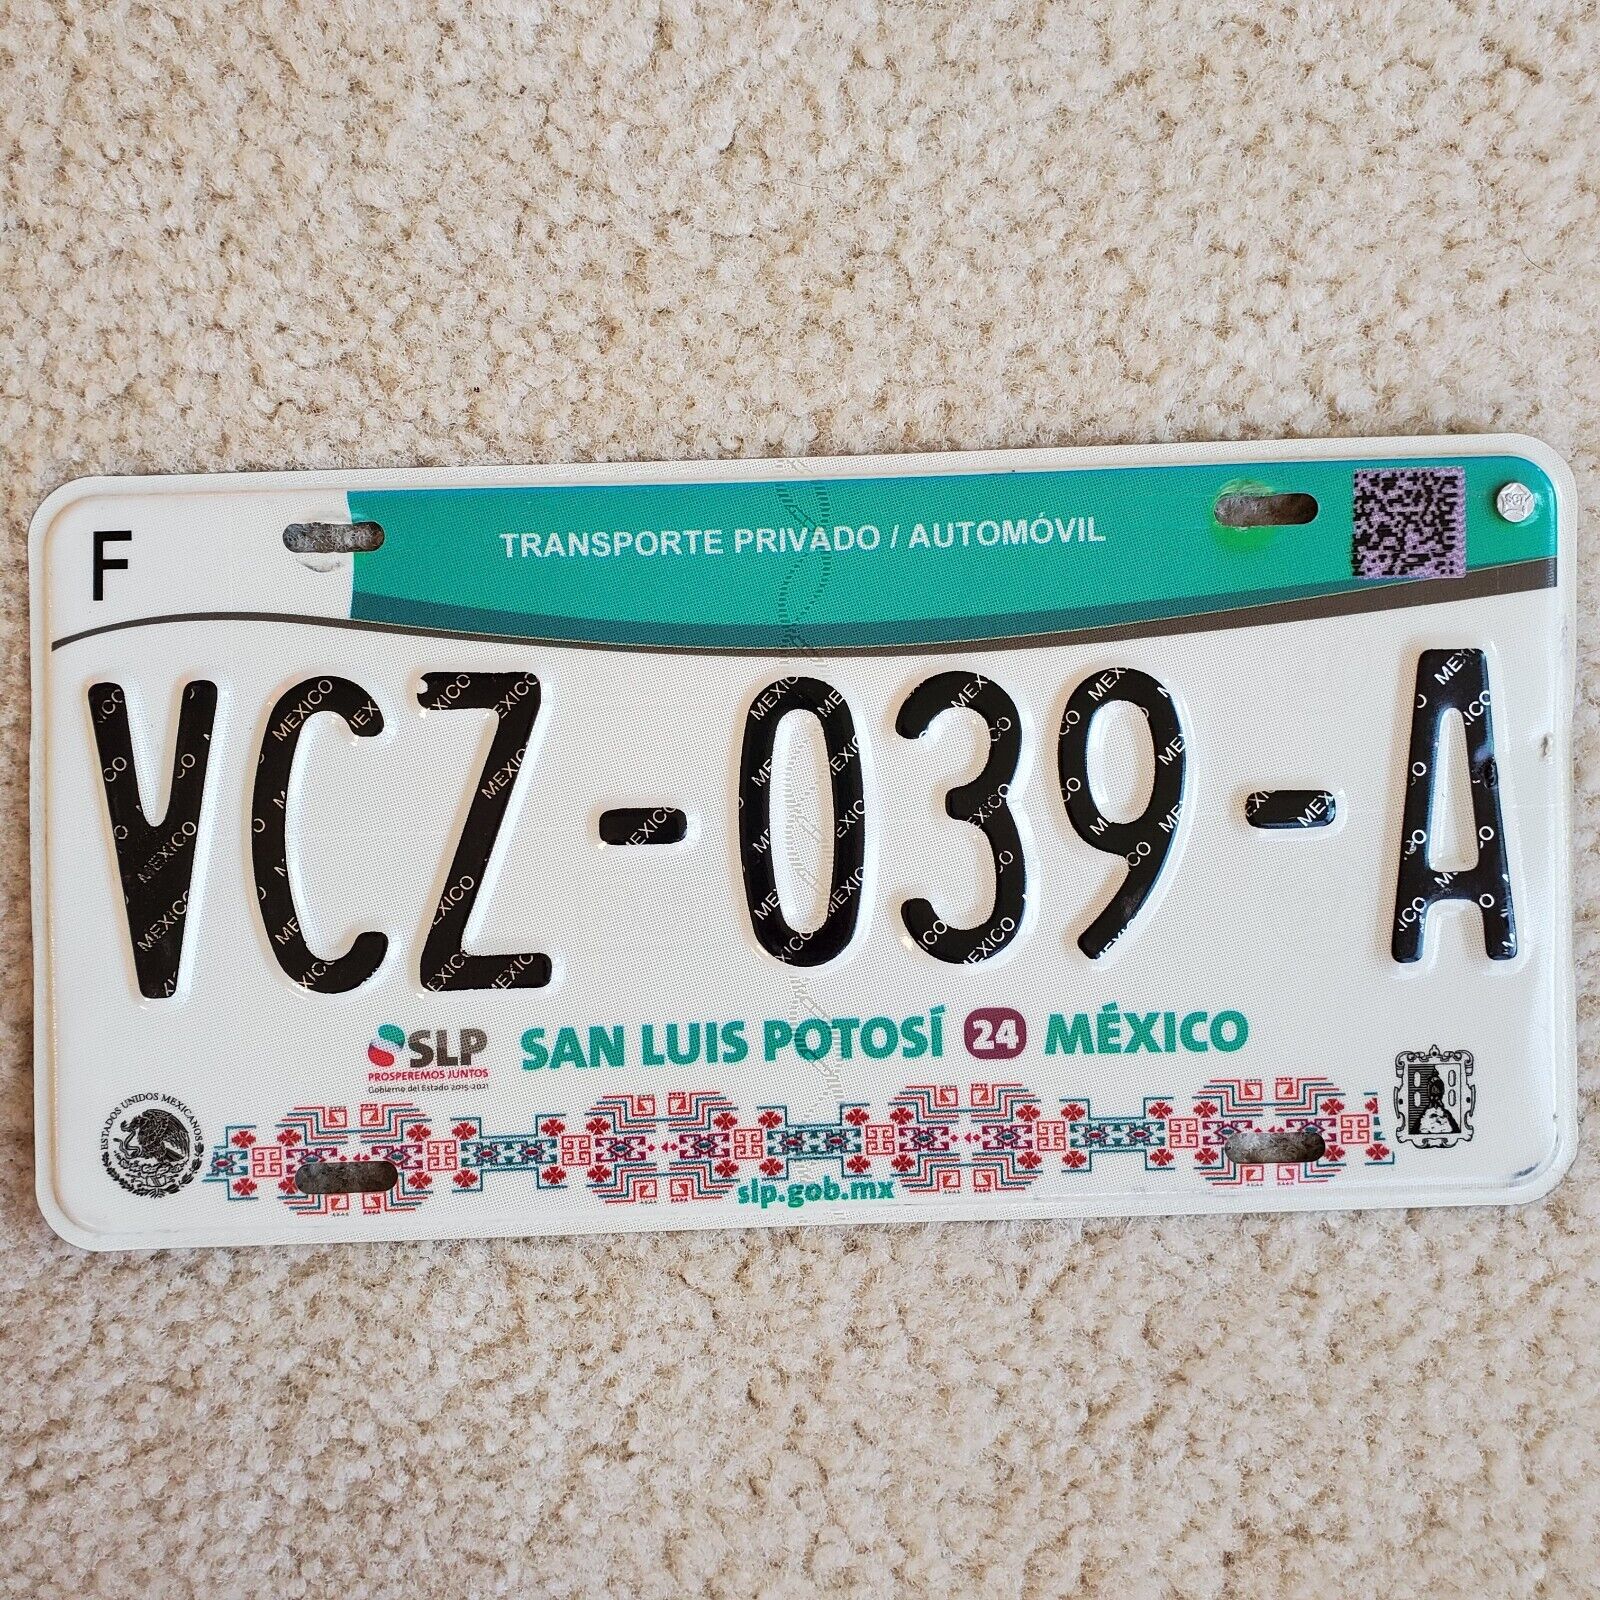 San Luis Potosí México License Plate VCZ-039-A Prosperemos Juntos Clean